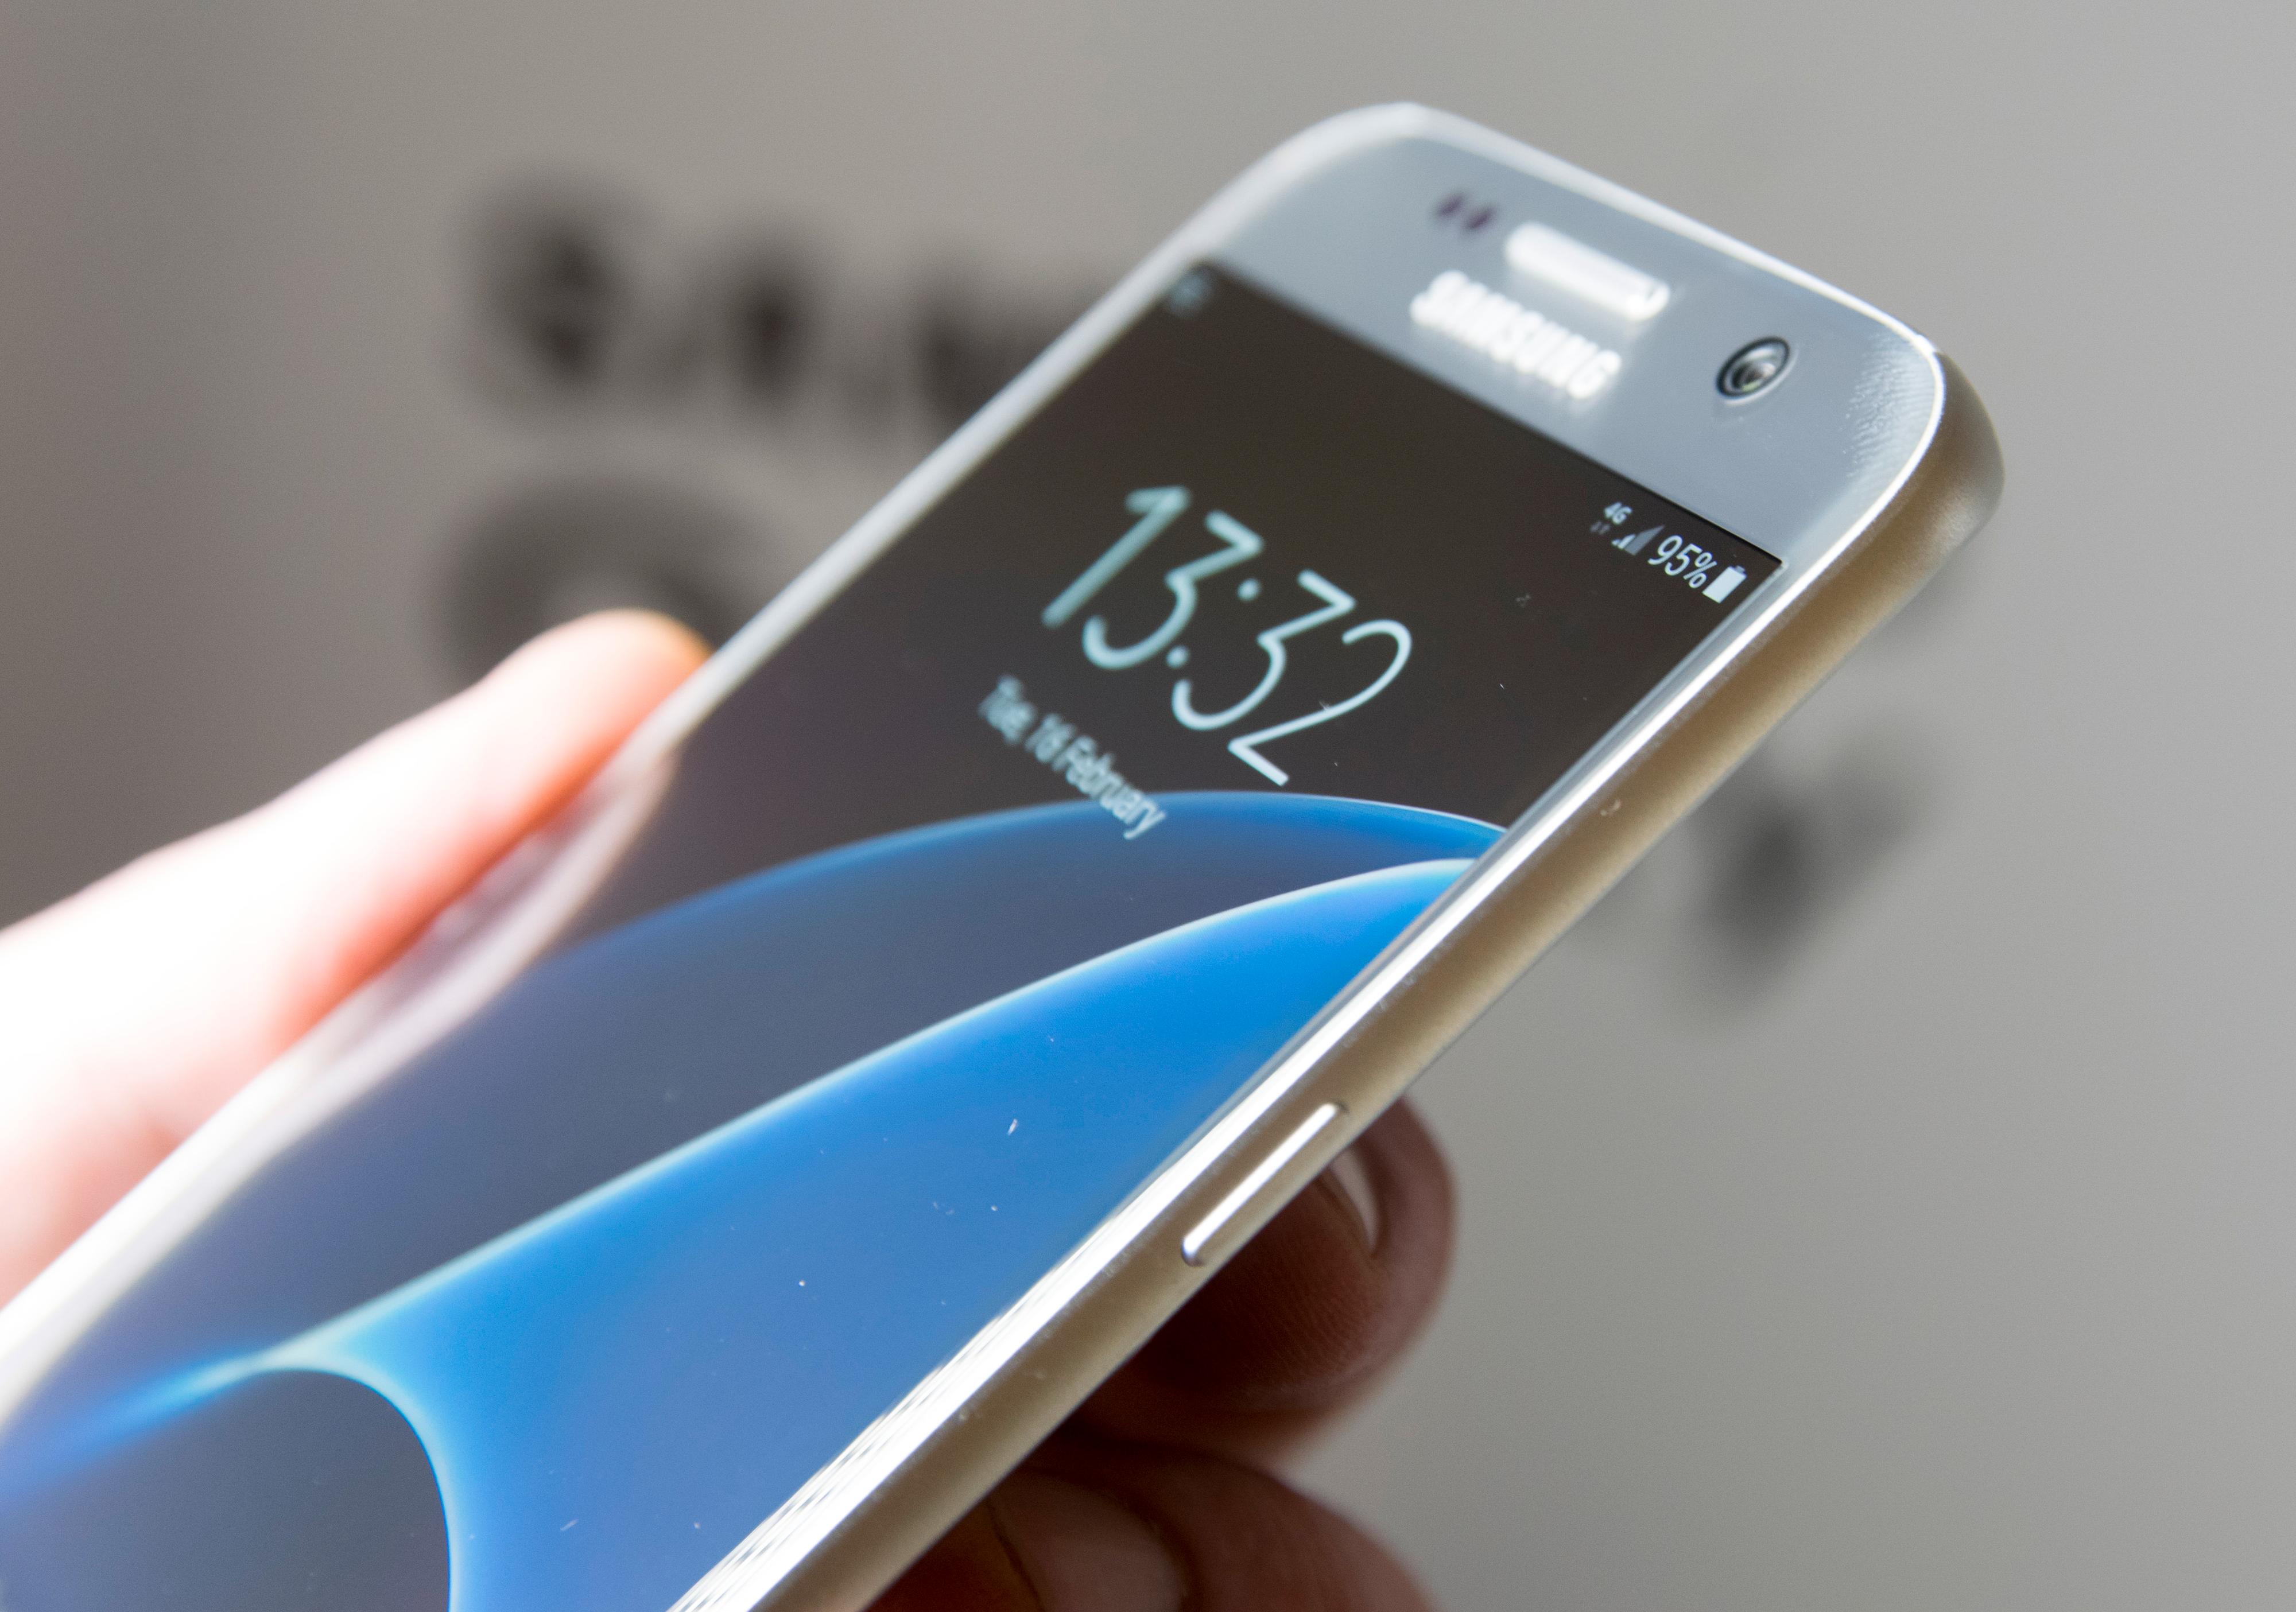 En flat utgave av Galaxy S7 kommer også. Den har litt mindre skjerm, men deler ellers spesifikasjoner med Edge-utgaven.